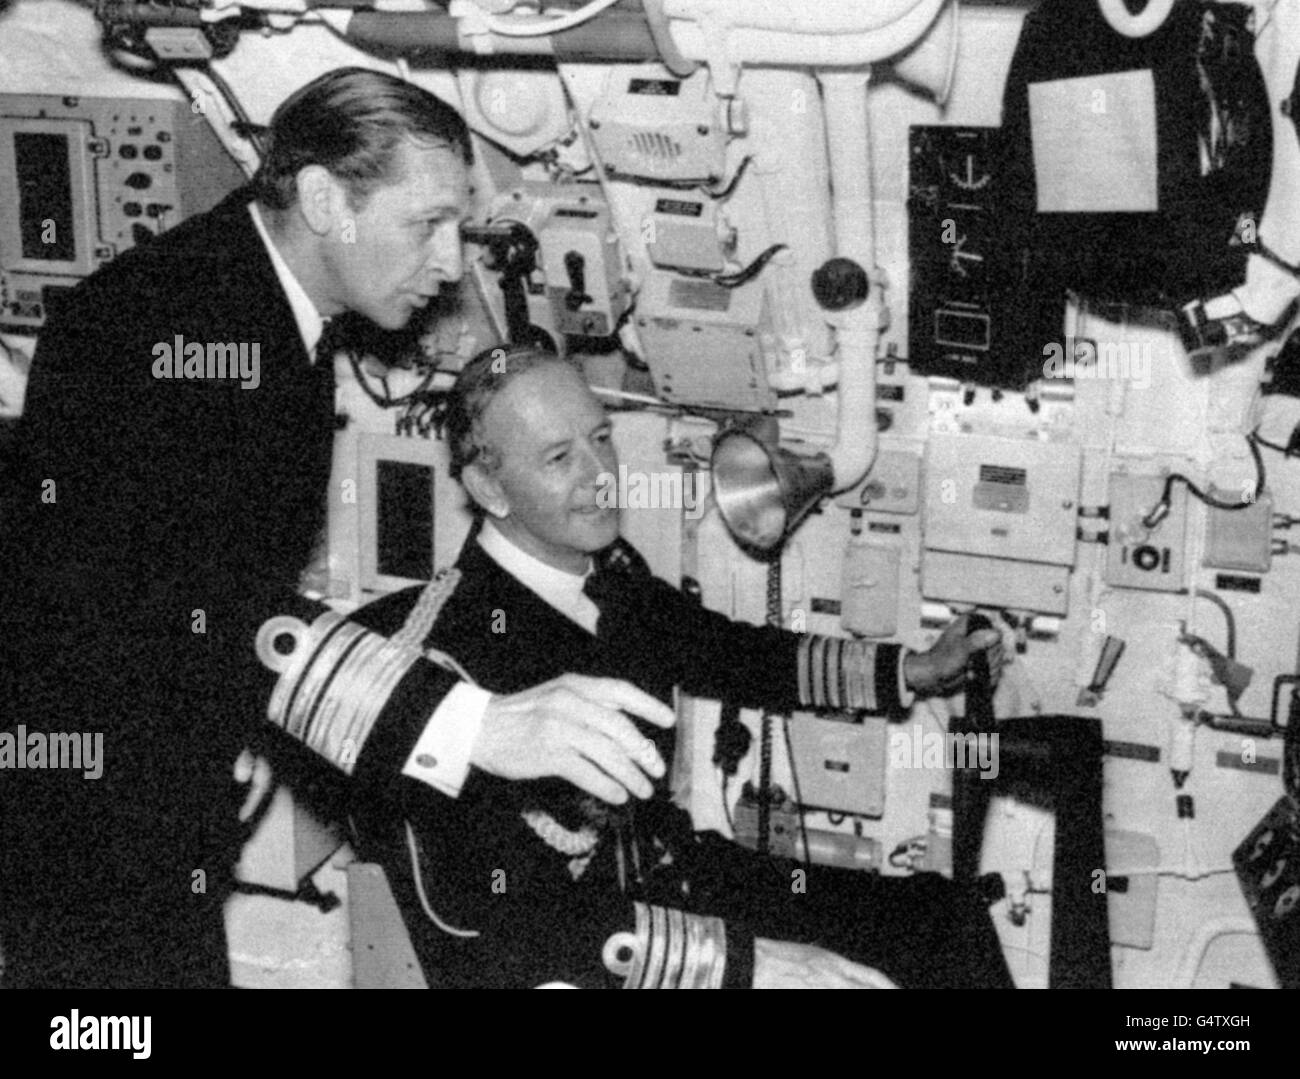 Alla messa in servizio di HMS Sovereign, l'ottavo sottomarino nucleare della Royal Navy, il Vice Ammiraglio Iwan Raikes (l), il nuovo ufficiale di bandiera sottomarini, spiega il pannello di controllo della nave al primo Signore del mare seduto, l'Ammiraglio Sir Edward Ashmore. Vice Admiral Raikes è consulente ufficiale su questioni sottomarine per il Consiglio di Ammiragliato. Foto Stock